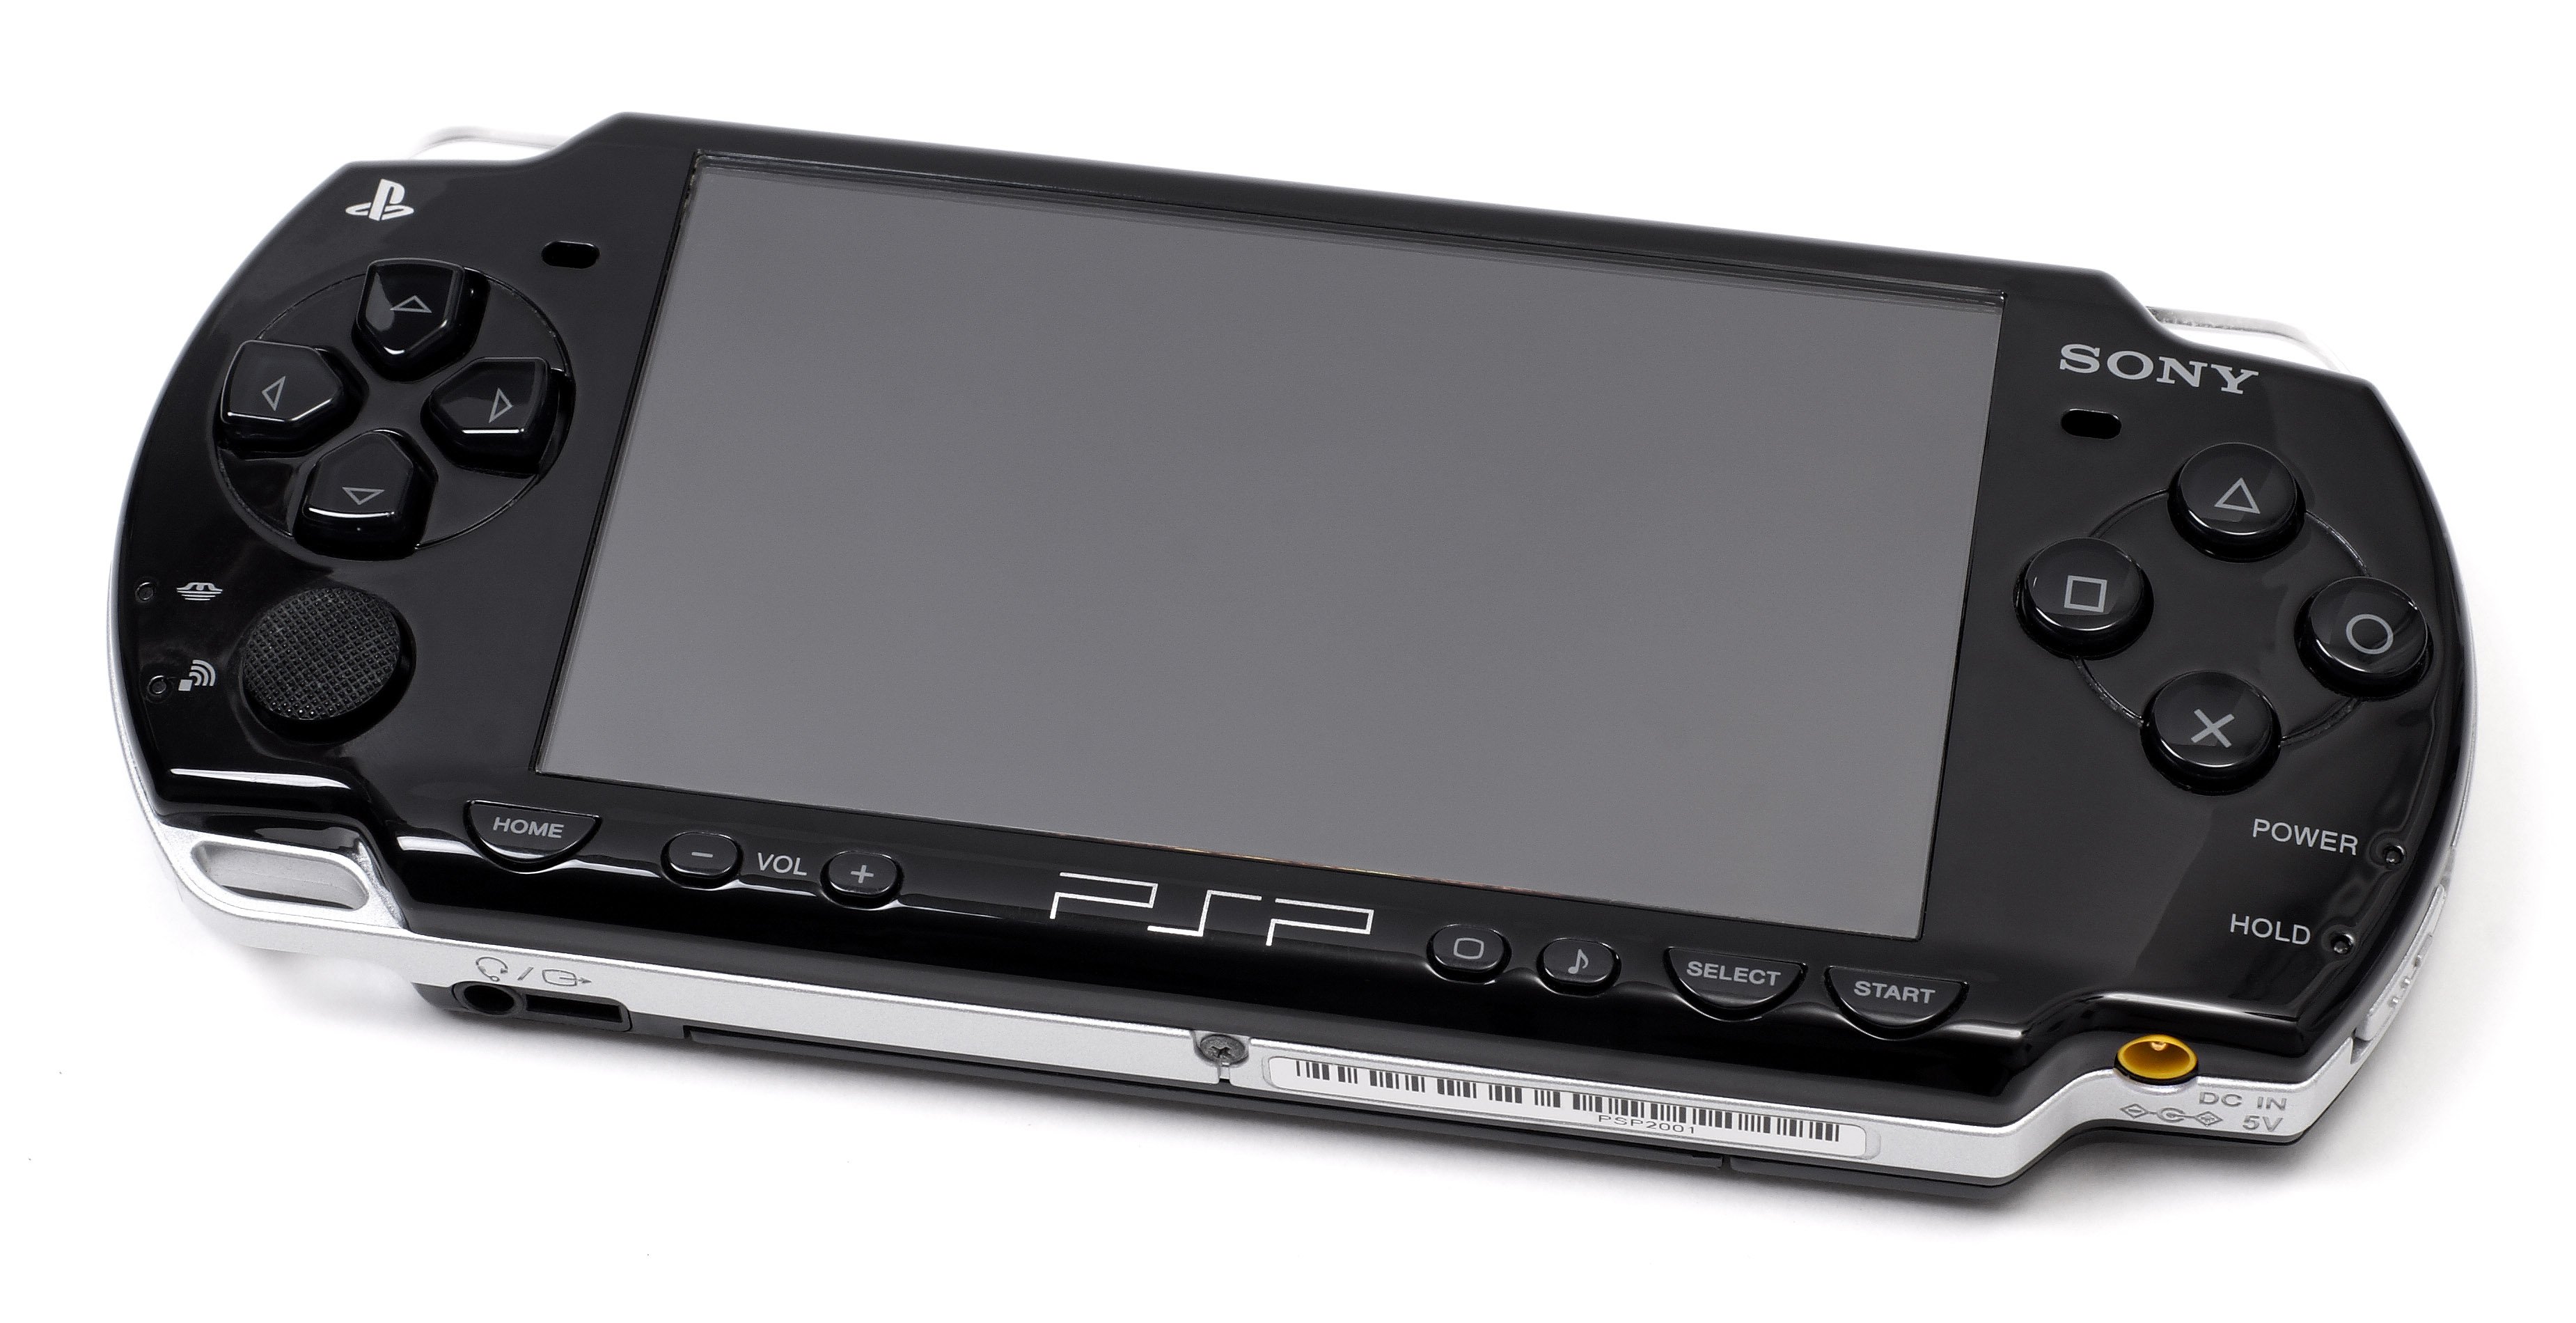 Sony PLAYSTATION Portable e1000